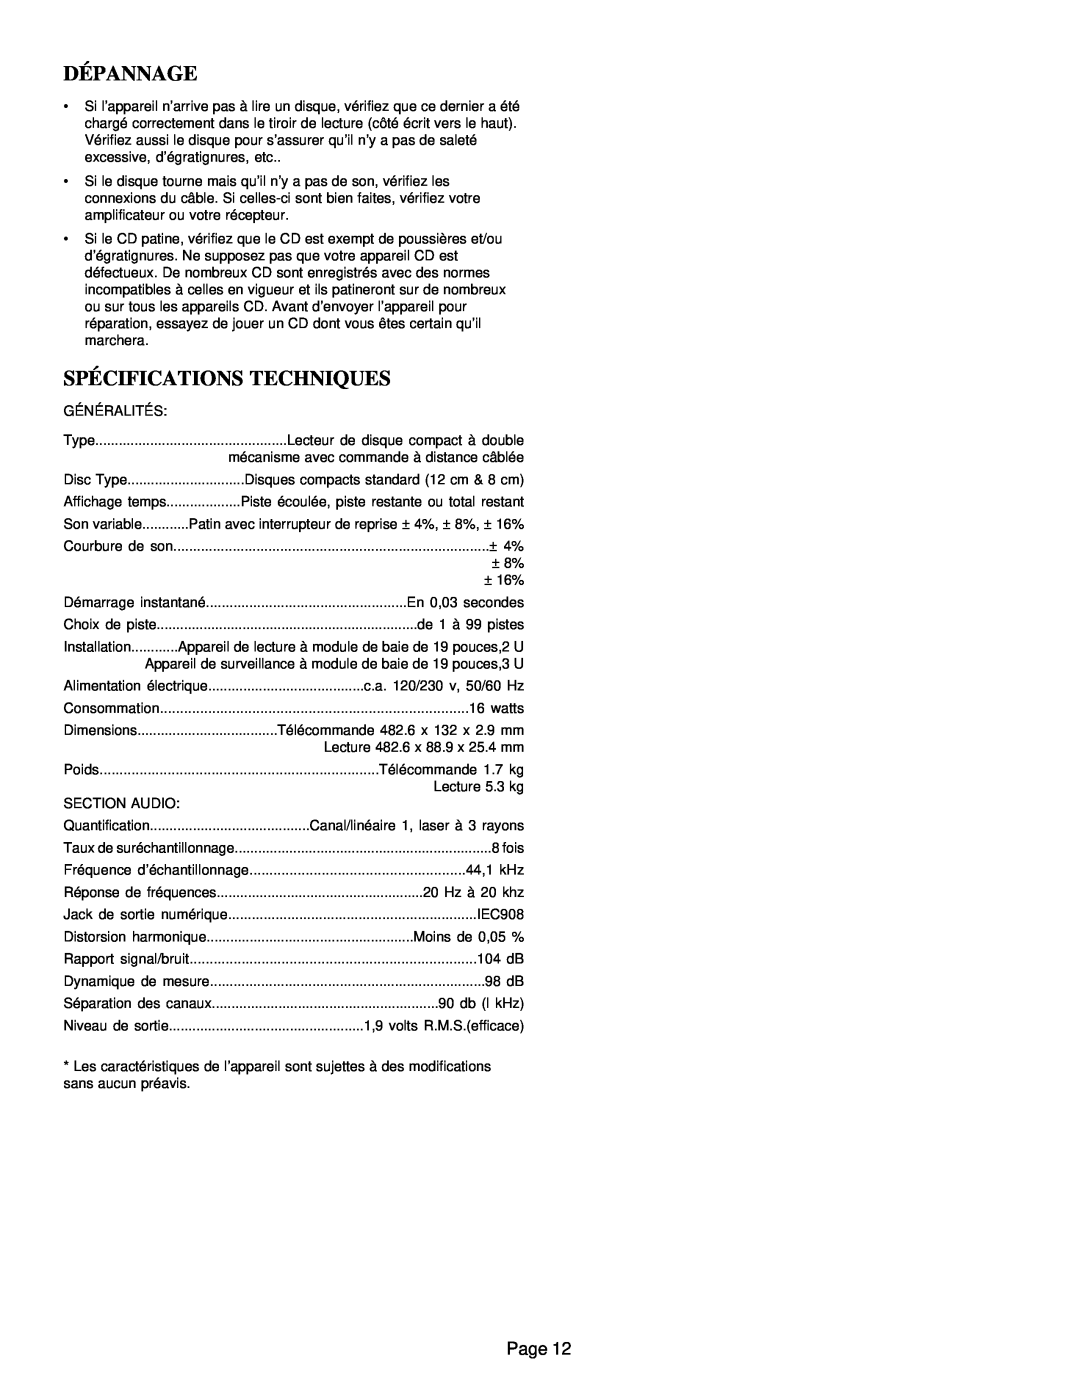 Gemini CD-9800 manual Dépannage, Spécifications Techniques, Page 